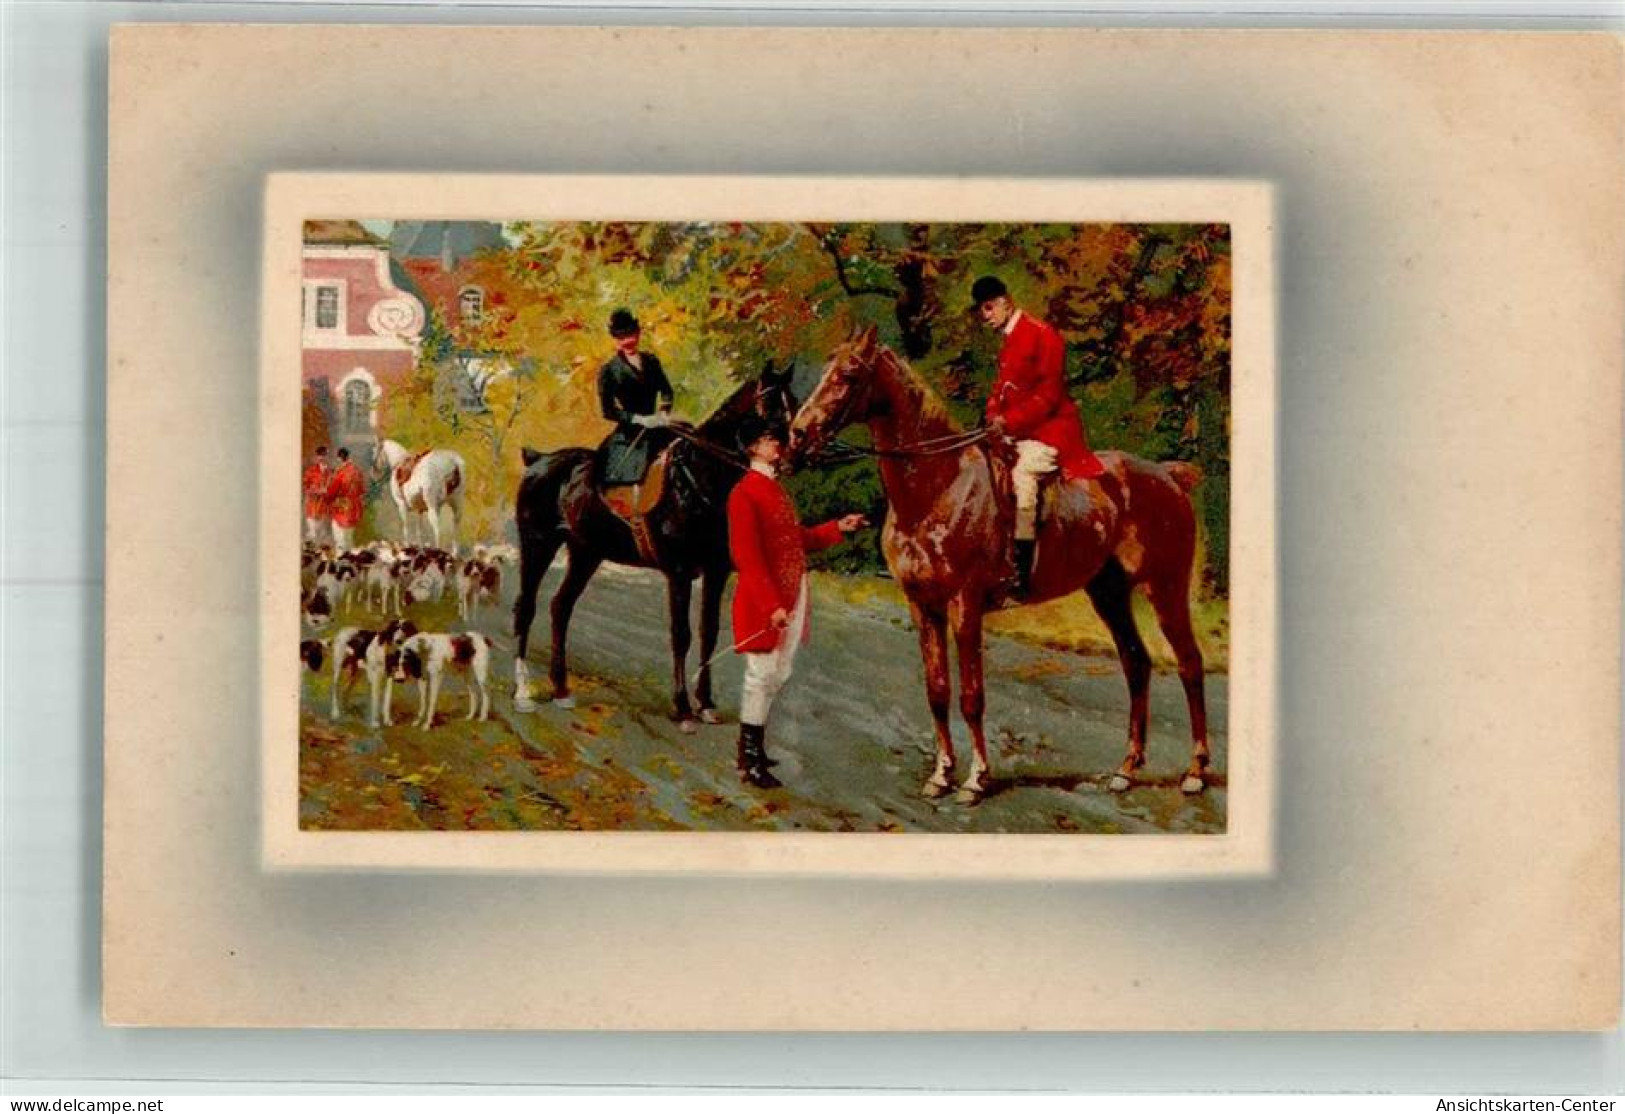 39802105 - Jagdhunde Pferde Meissner U. Buch Serie 1553 - Chasse